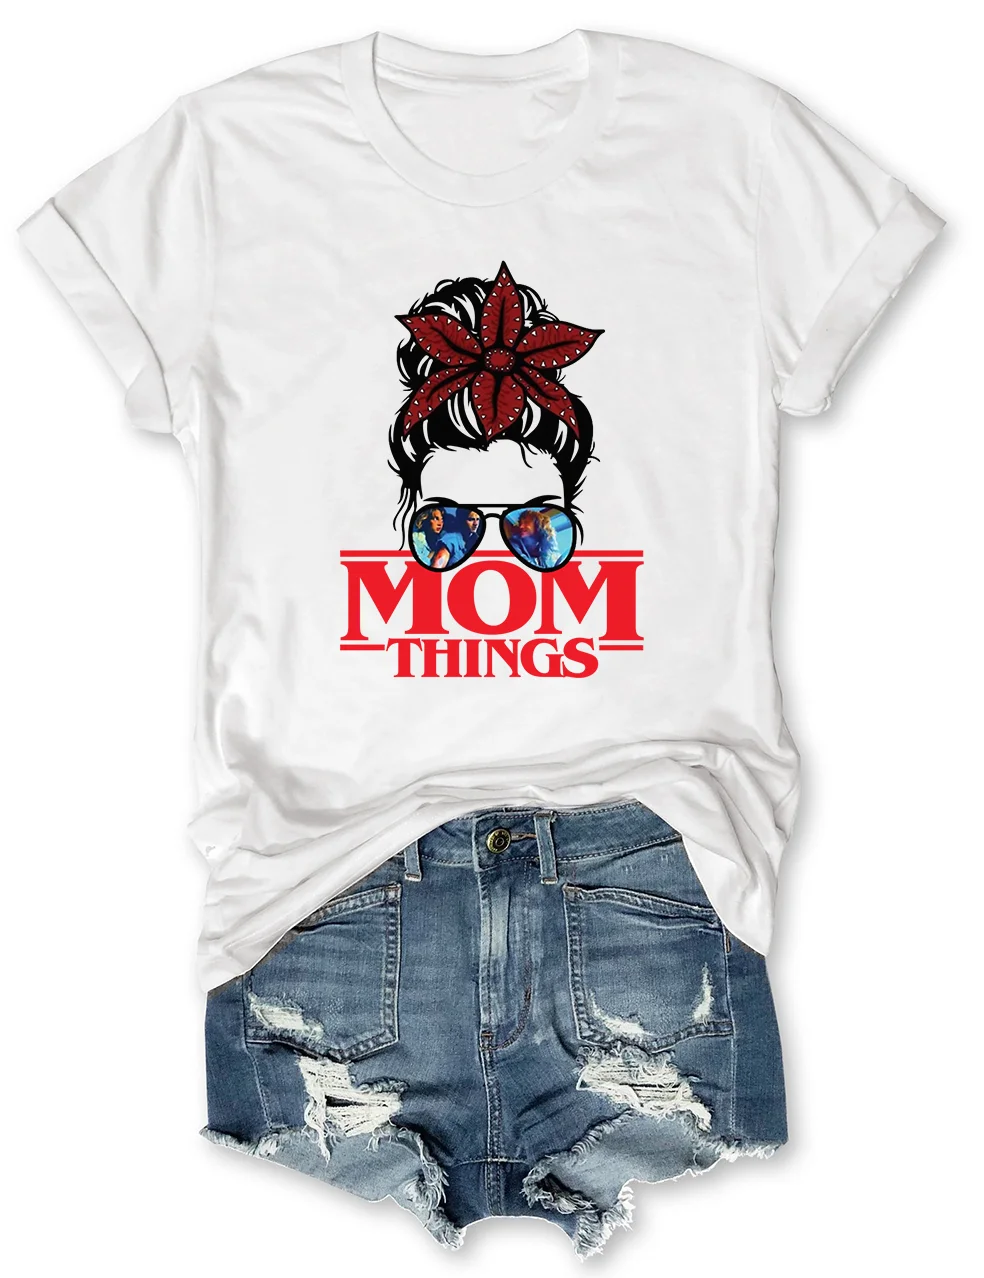 Mom Things T-Shirt